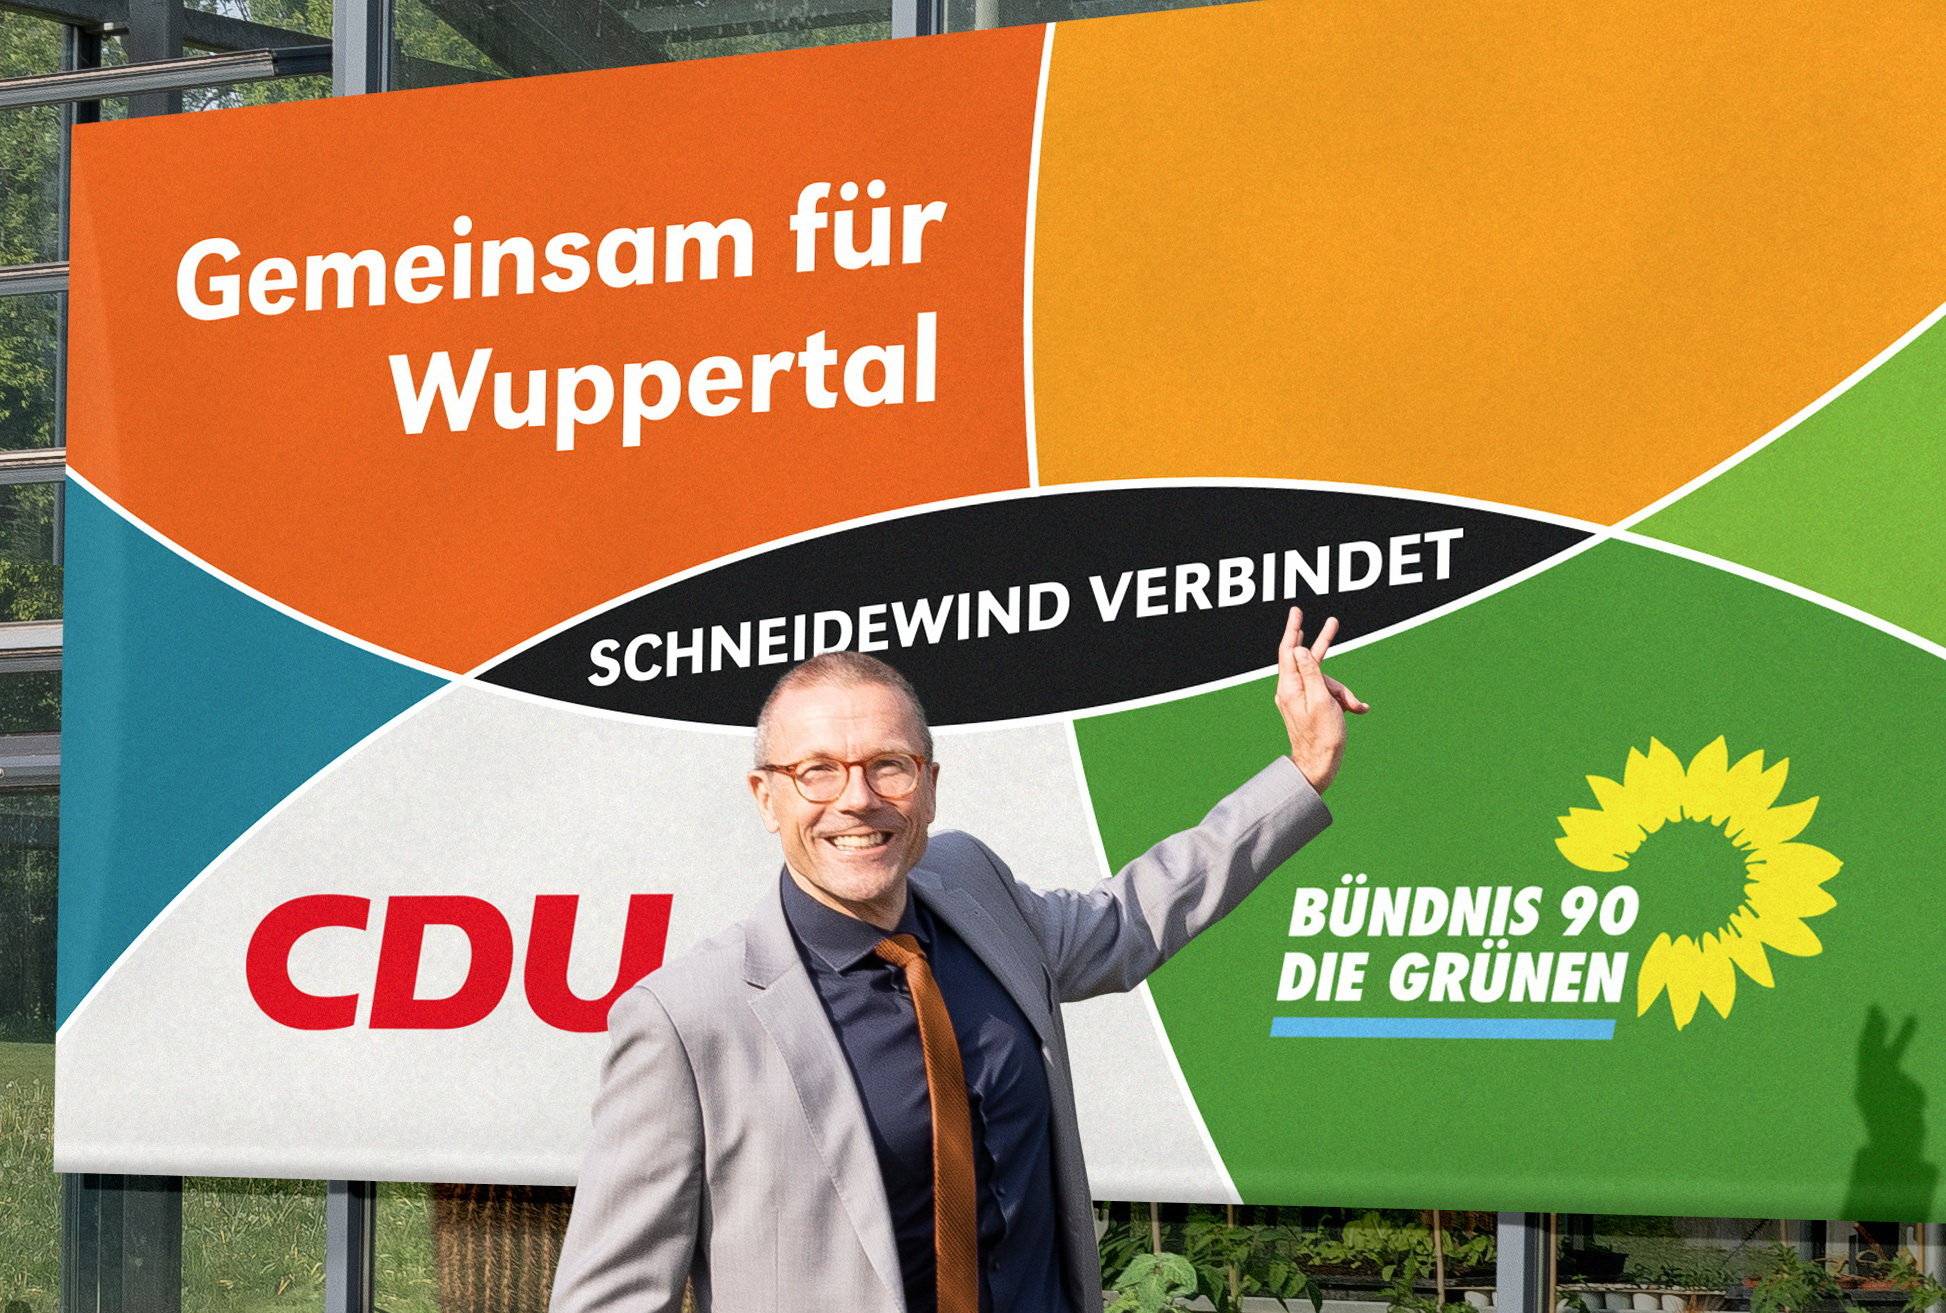  Prof. Uwe Schneidewind ist gemeinsamer OB-Kandidat der CDU und der Grünen. 